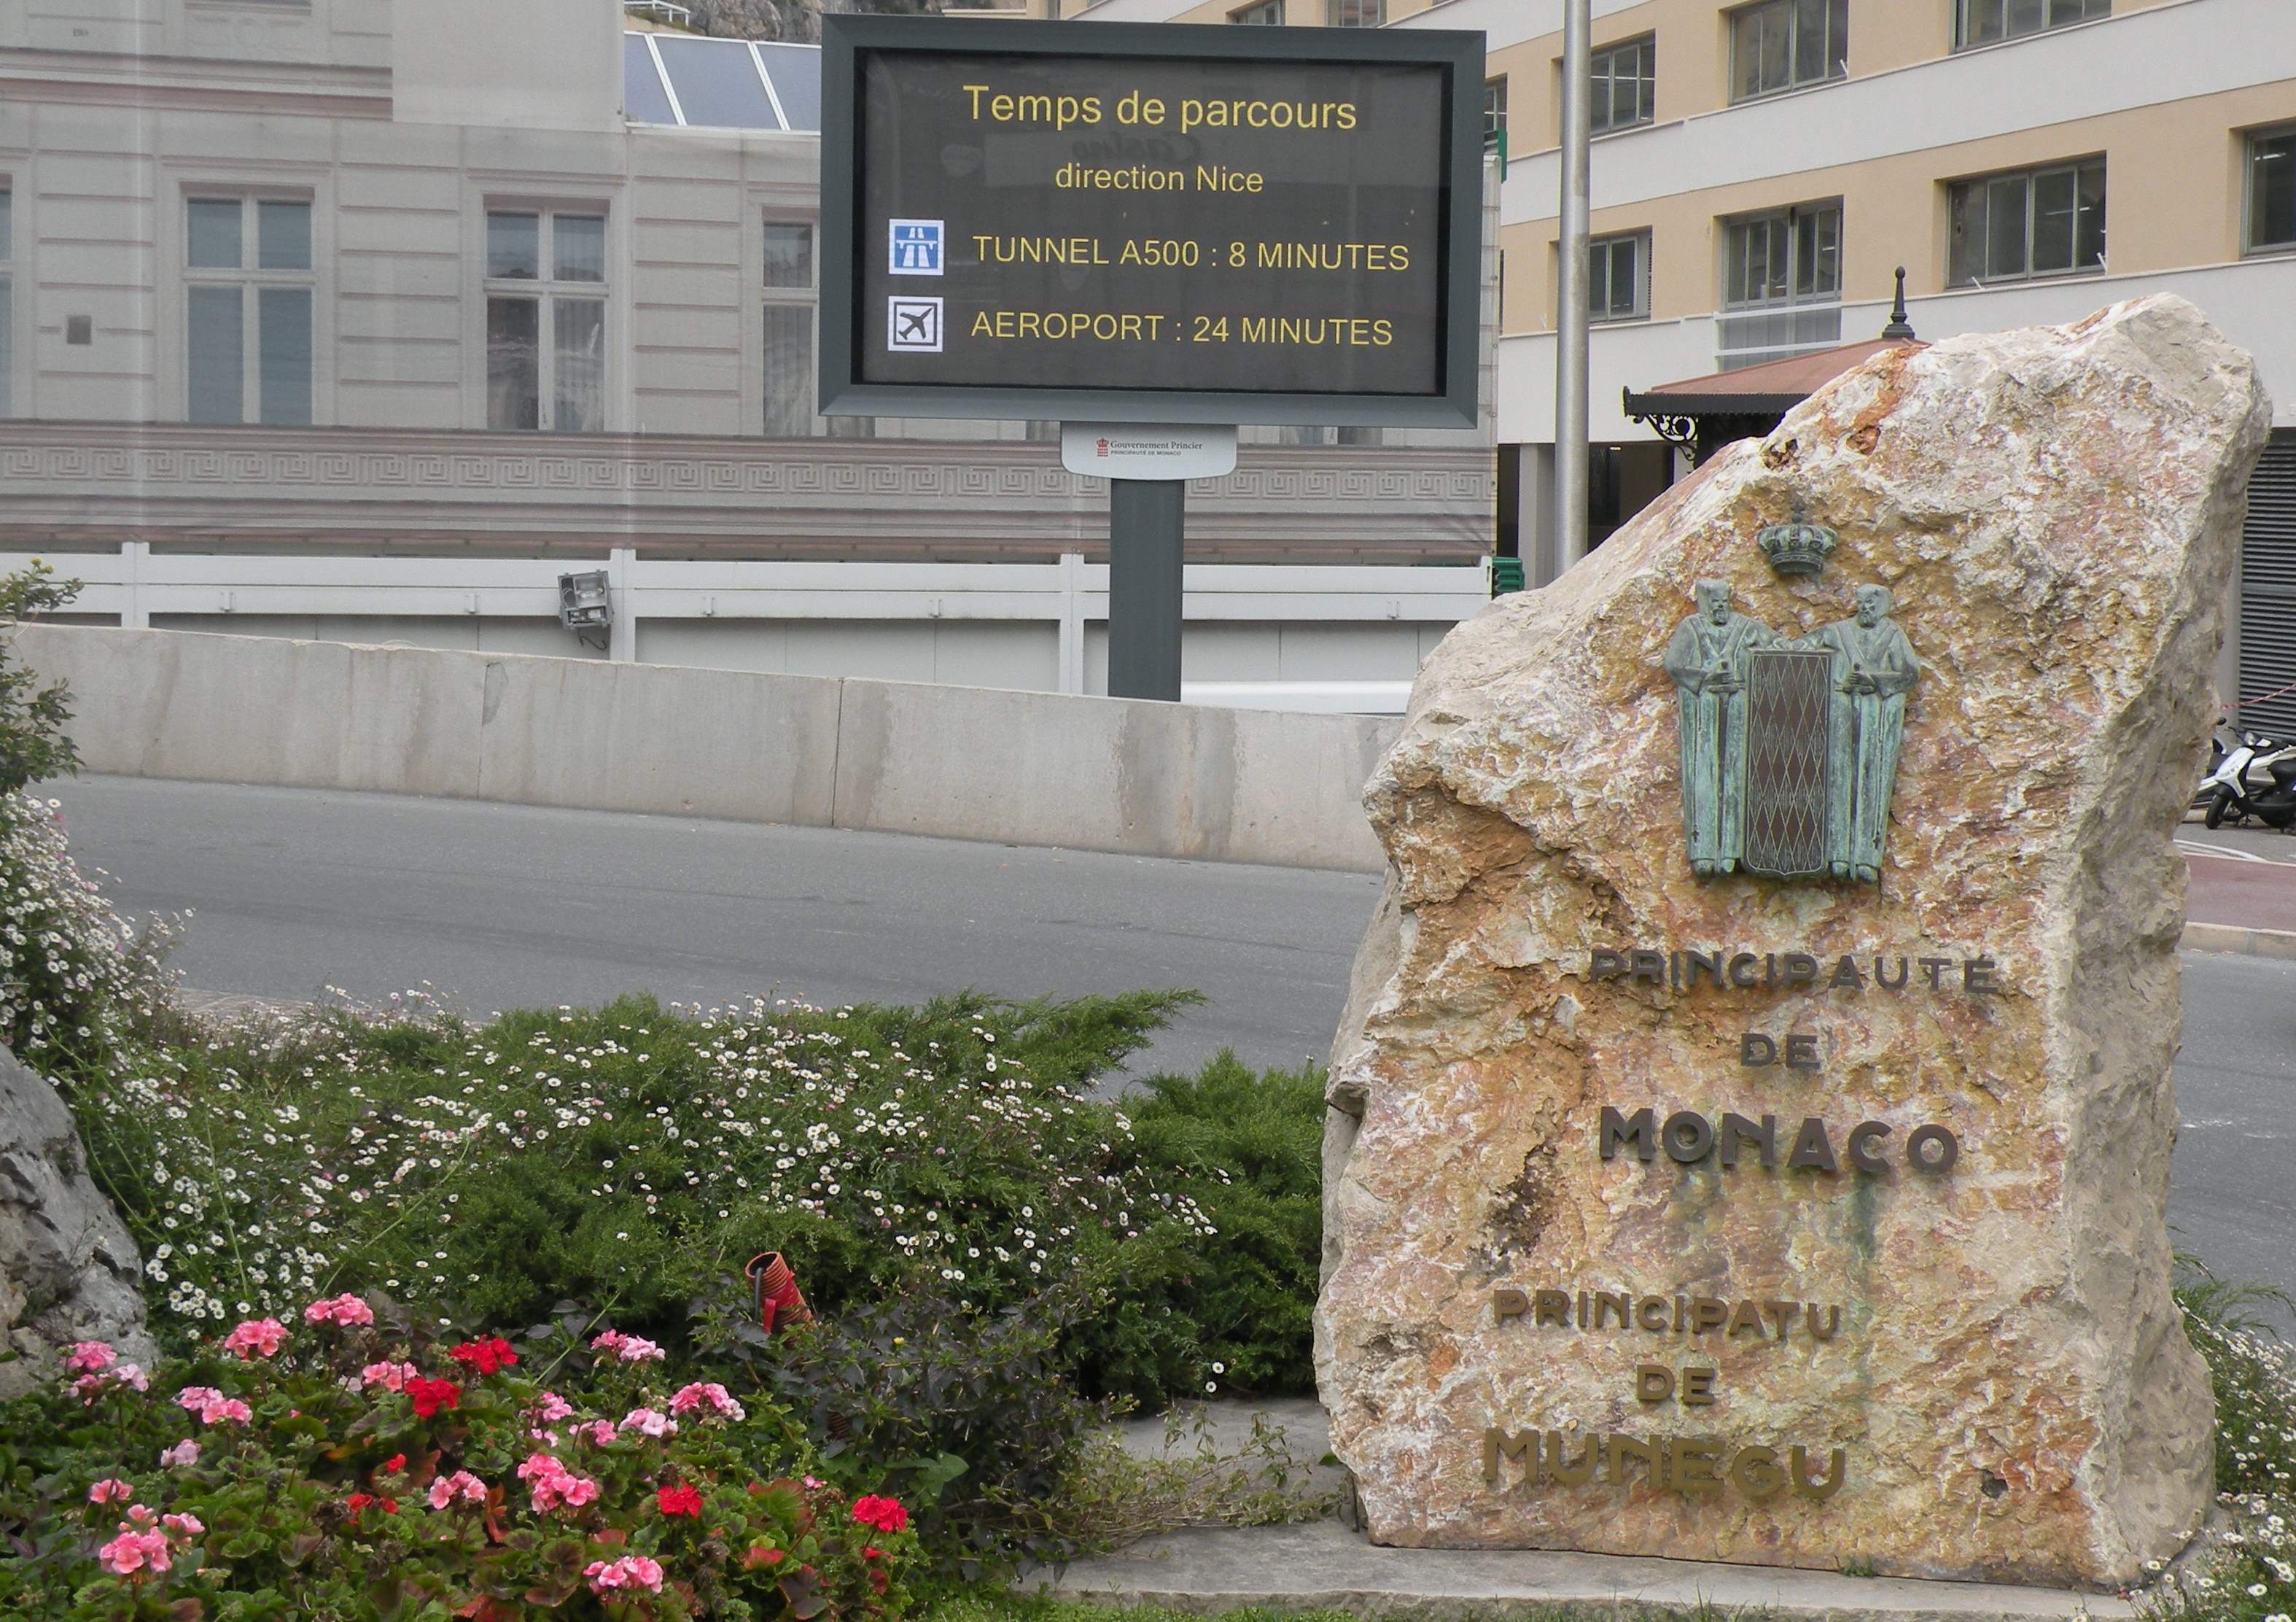 Autoroute A8 et Monaco centre : nouveau dispositif d’information « Temps de parcours »